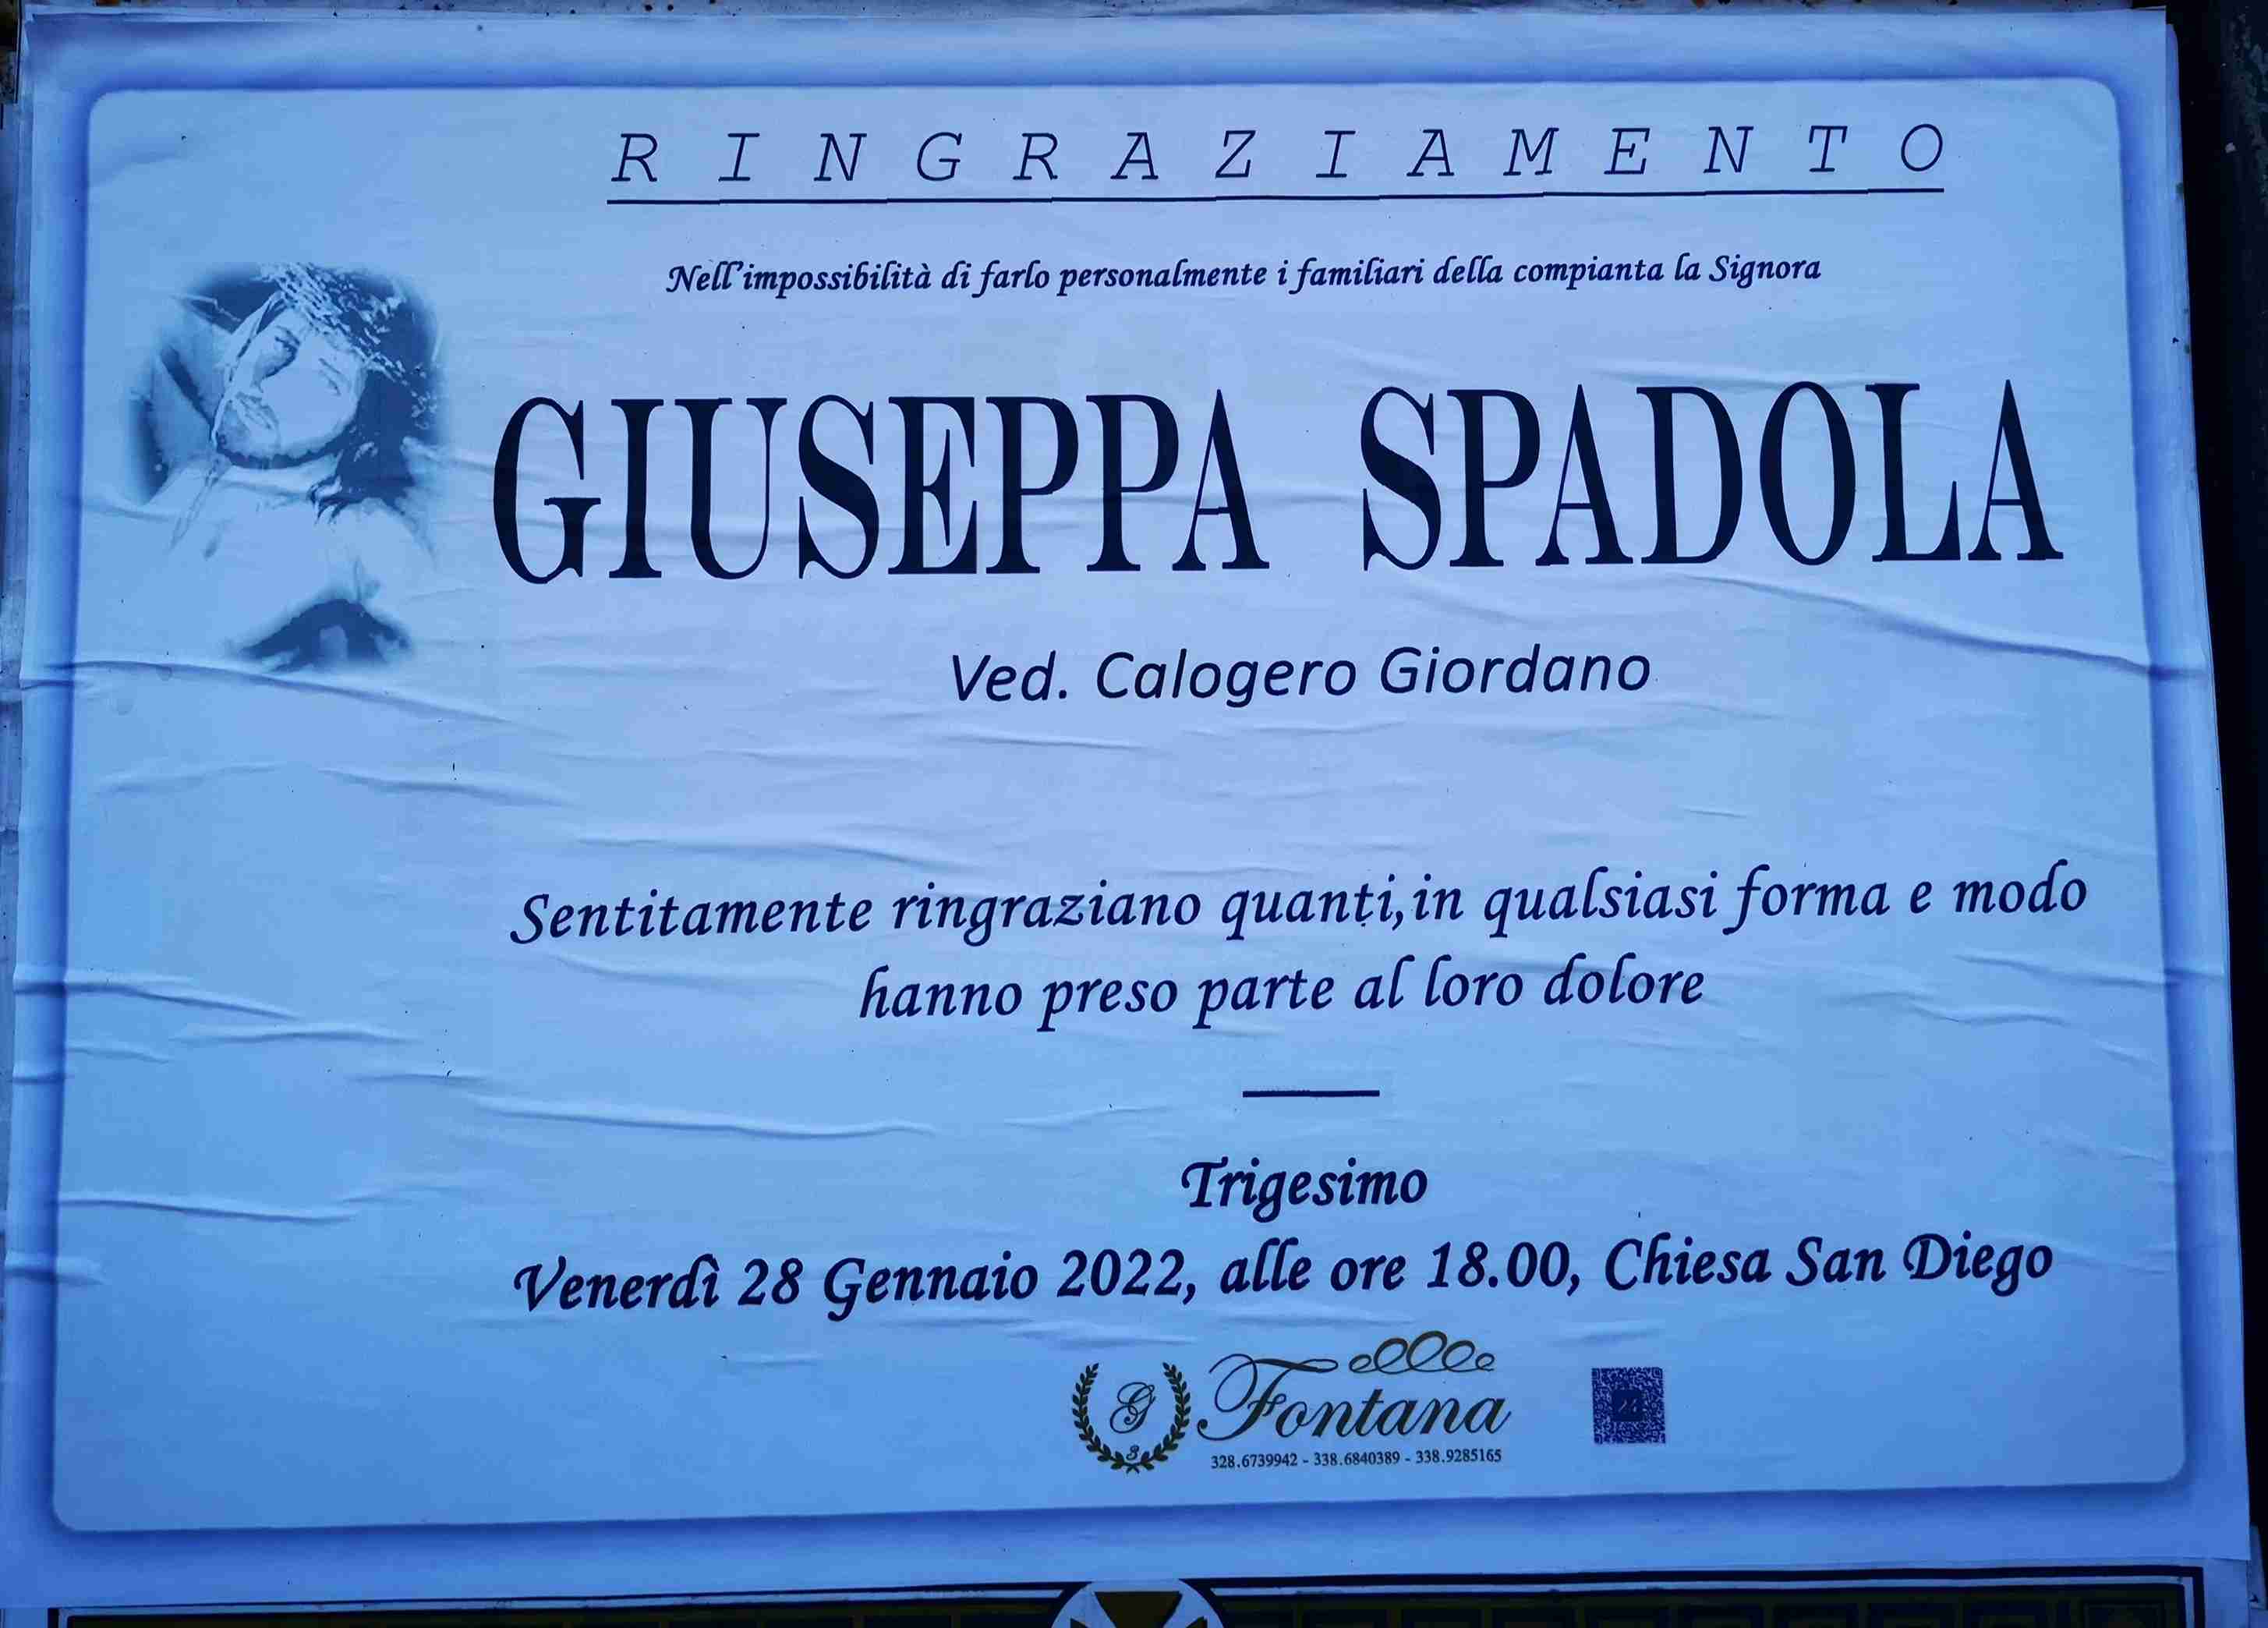 Giuseppa Spadola